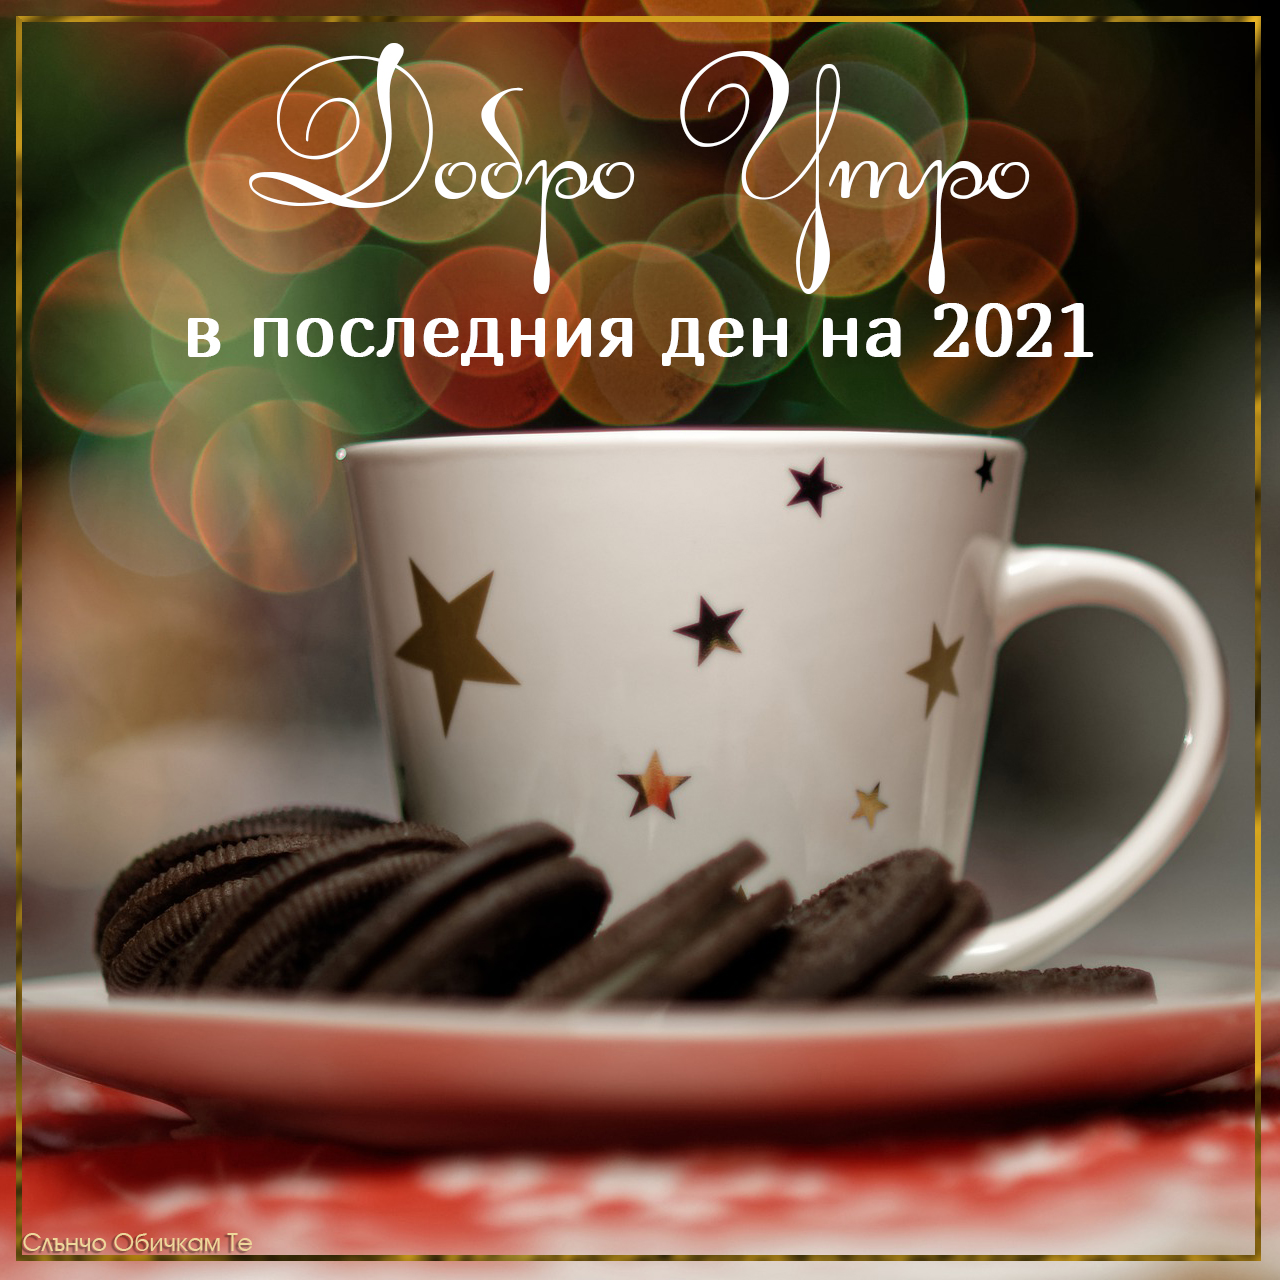 Добро утро в последния ден на 2021 - 31 декември 2021, добро утро 2021, добро утро на 31 декември, картички за добро утро, пожелания за добро утро